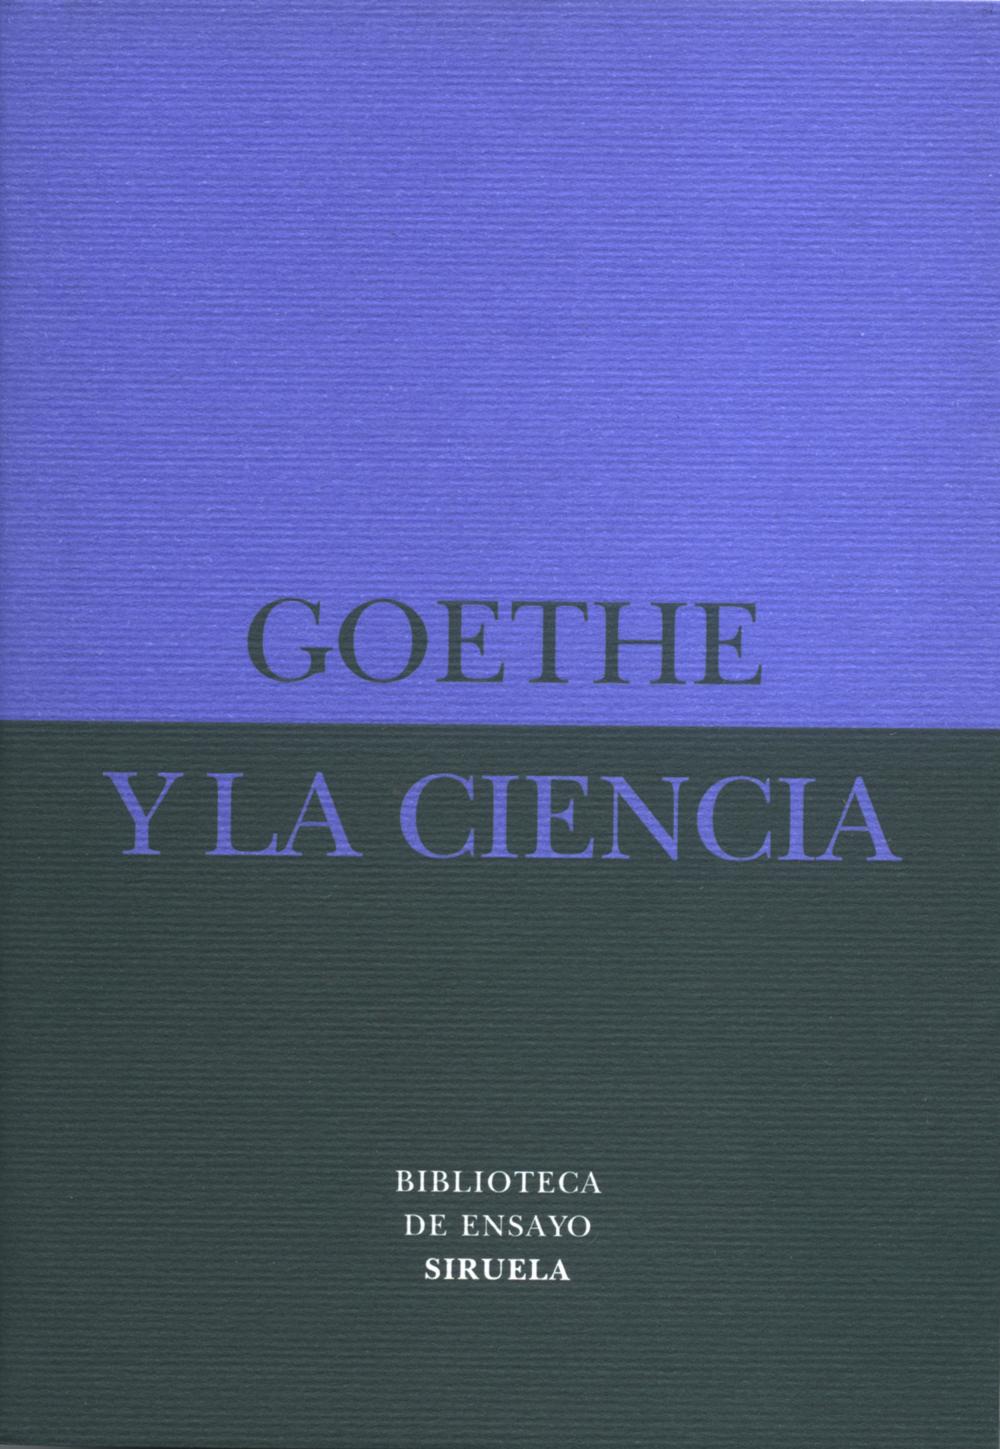 Goethe y la ciencia